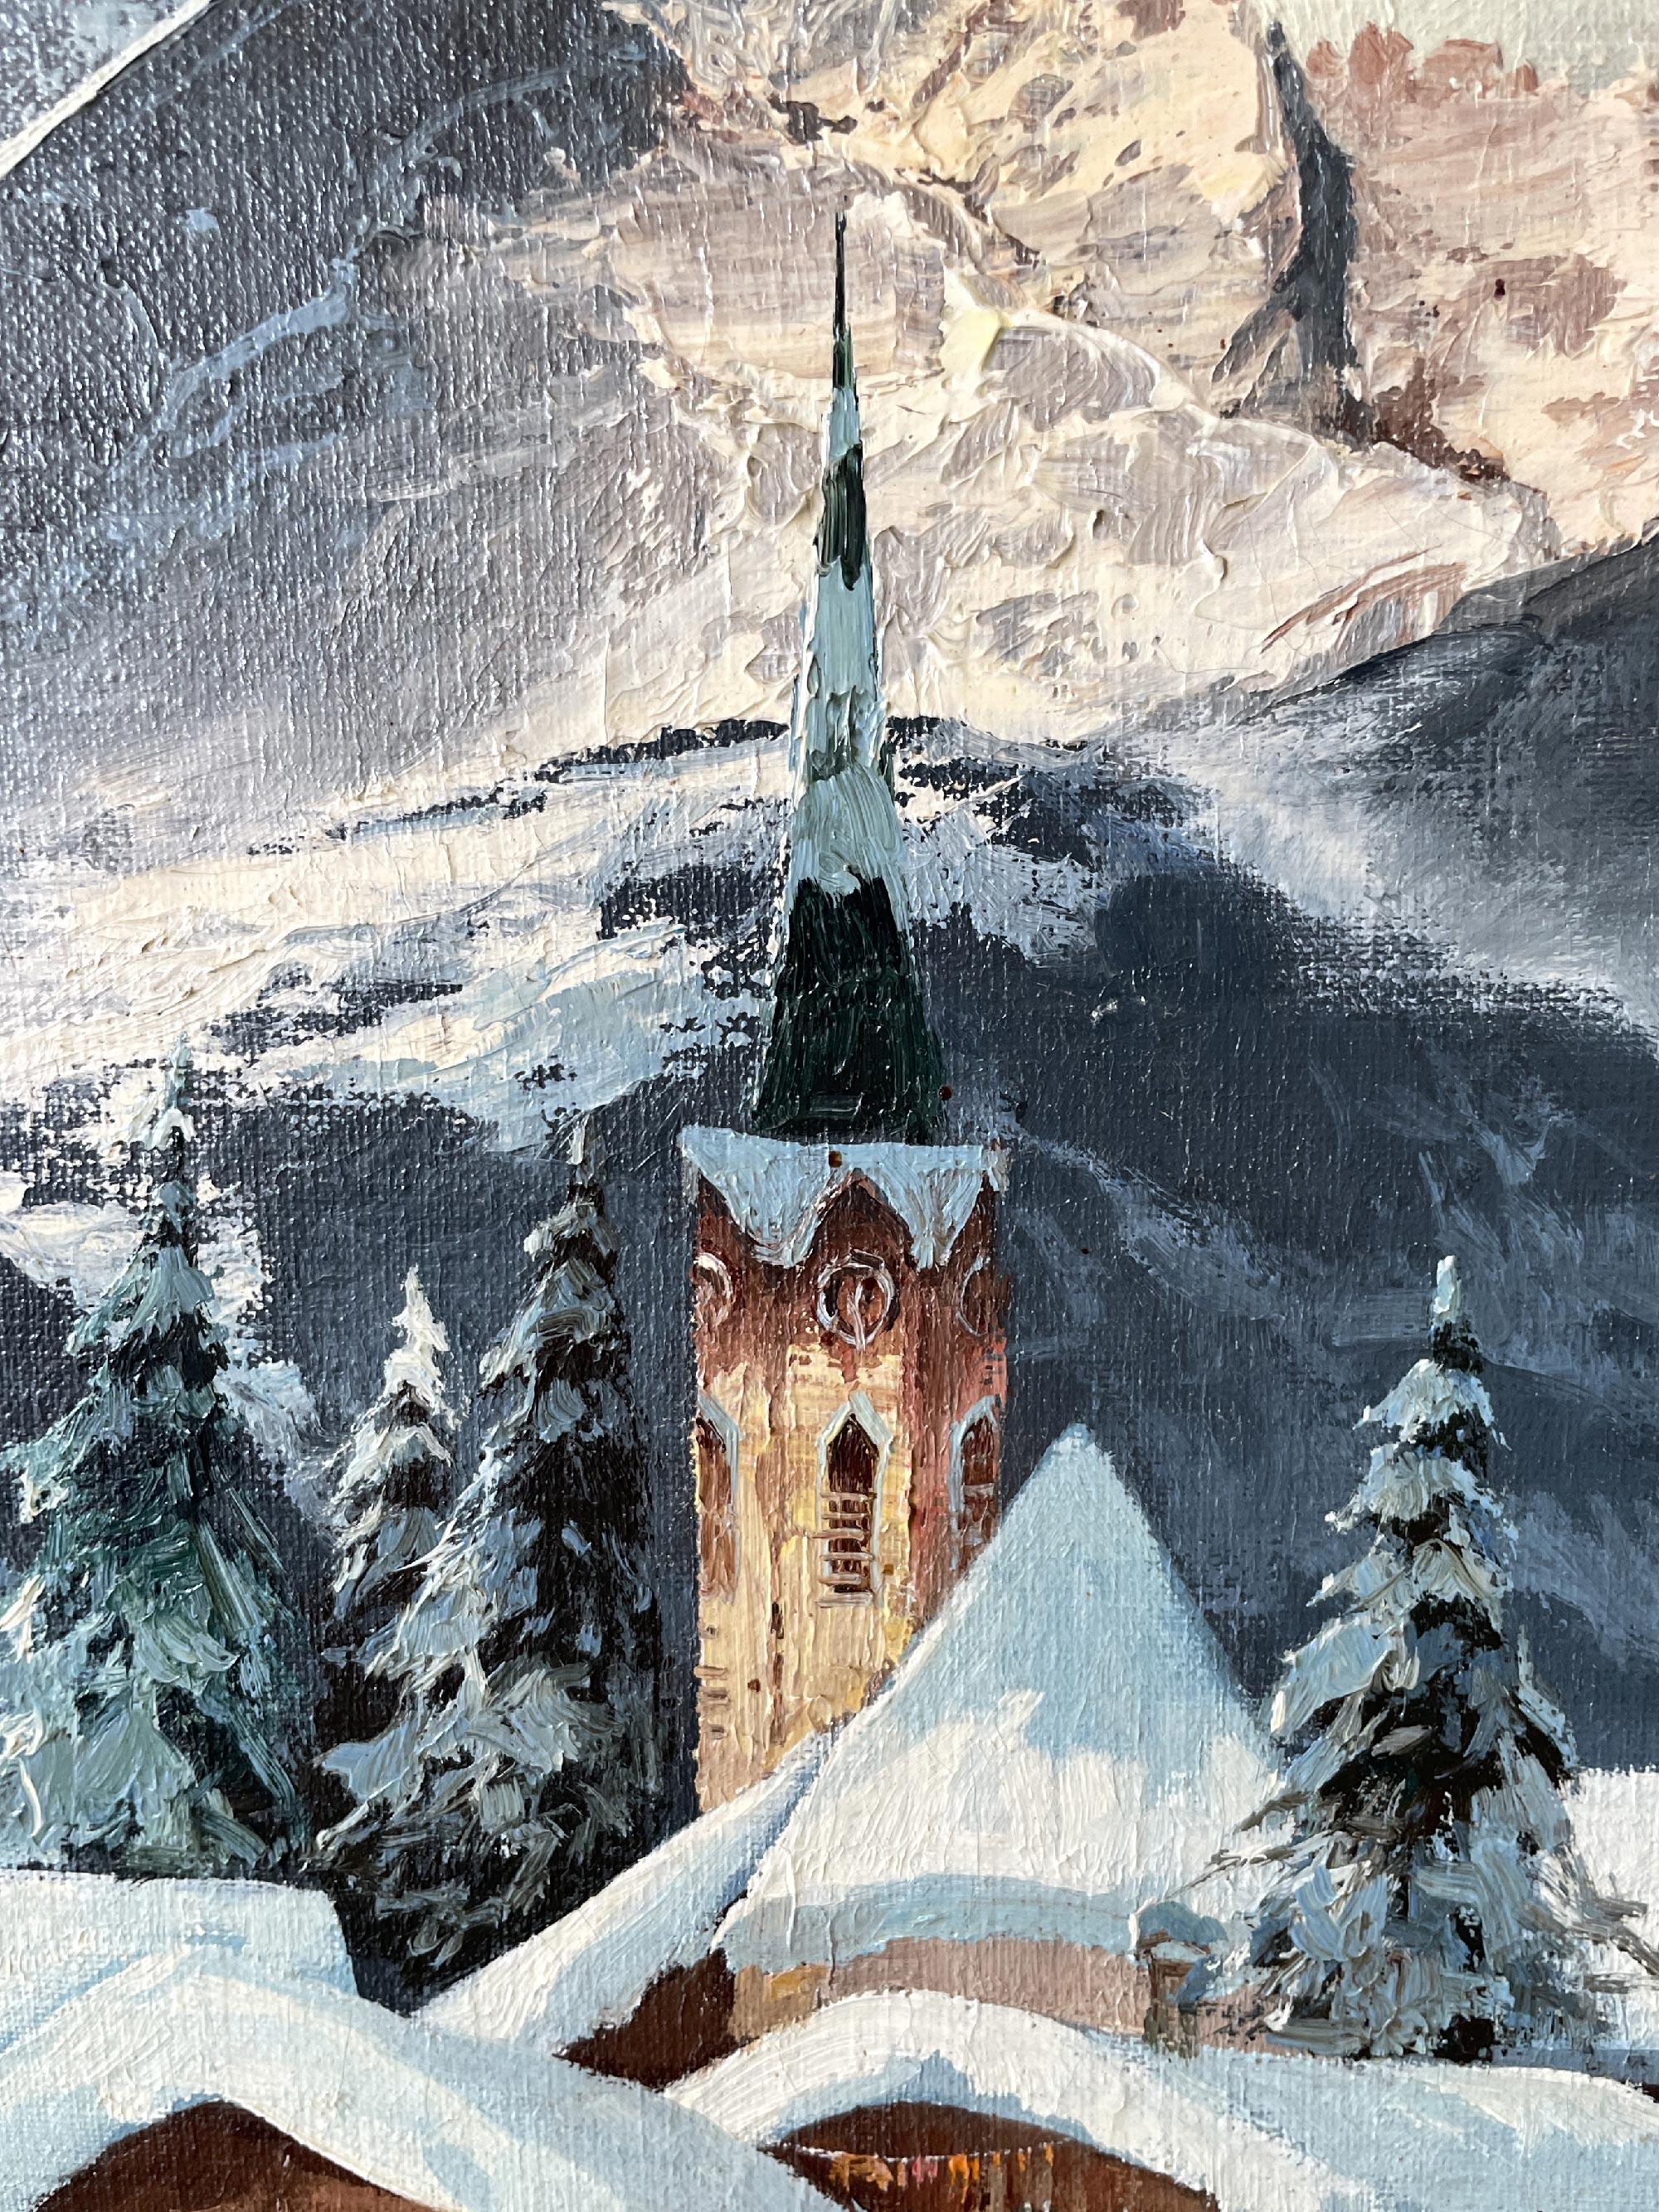 German Snowy Landscape by Arno Lemke Oil on Canvas, 1950